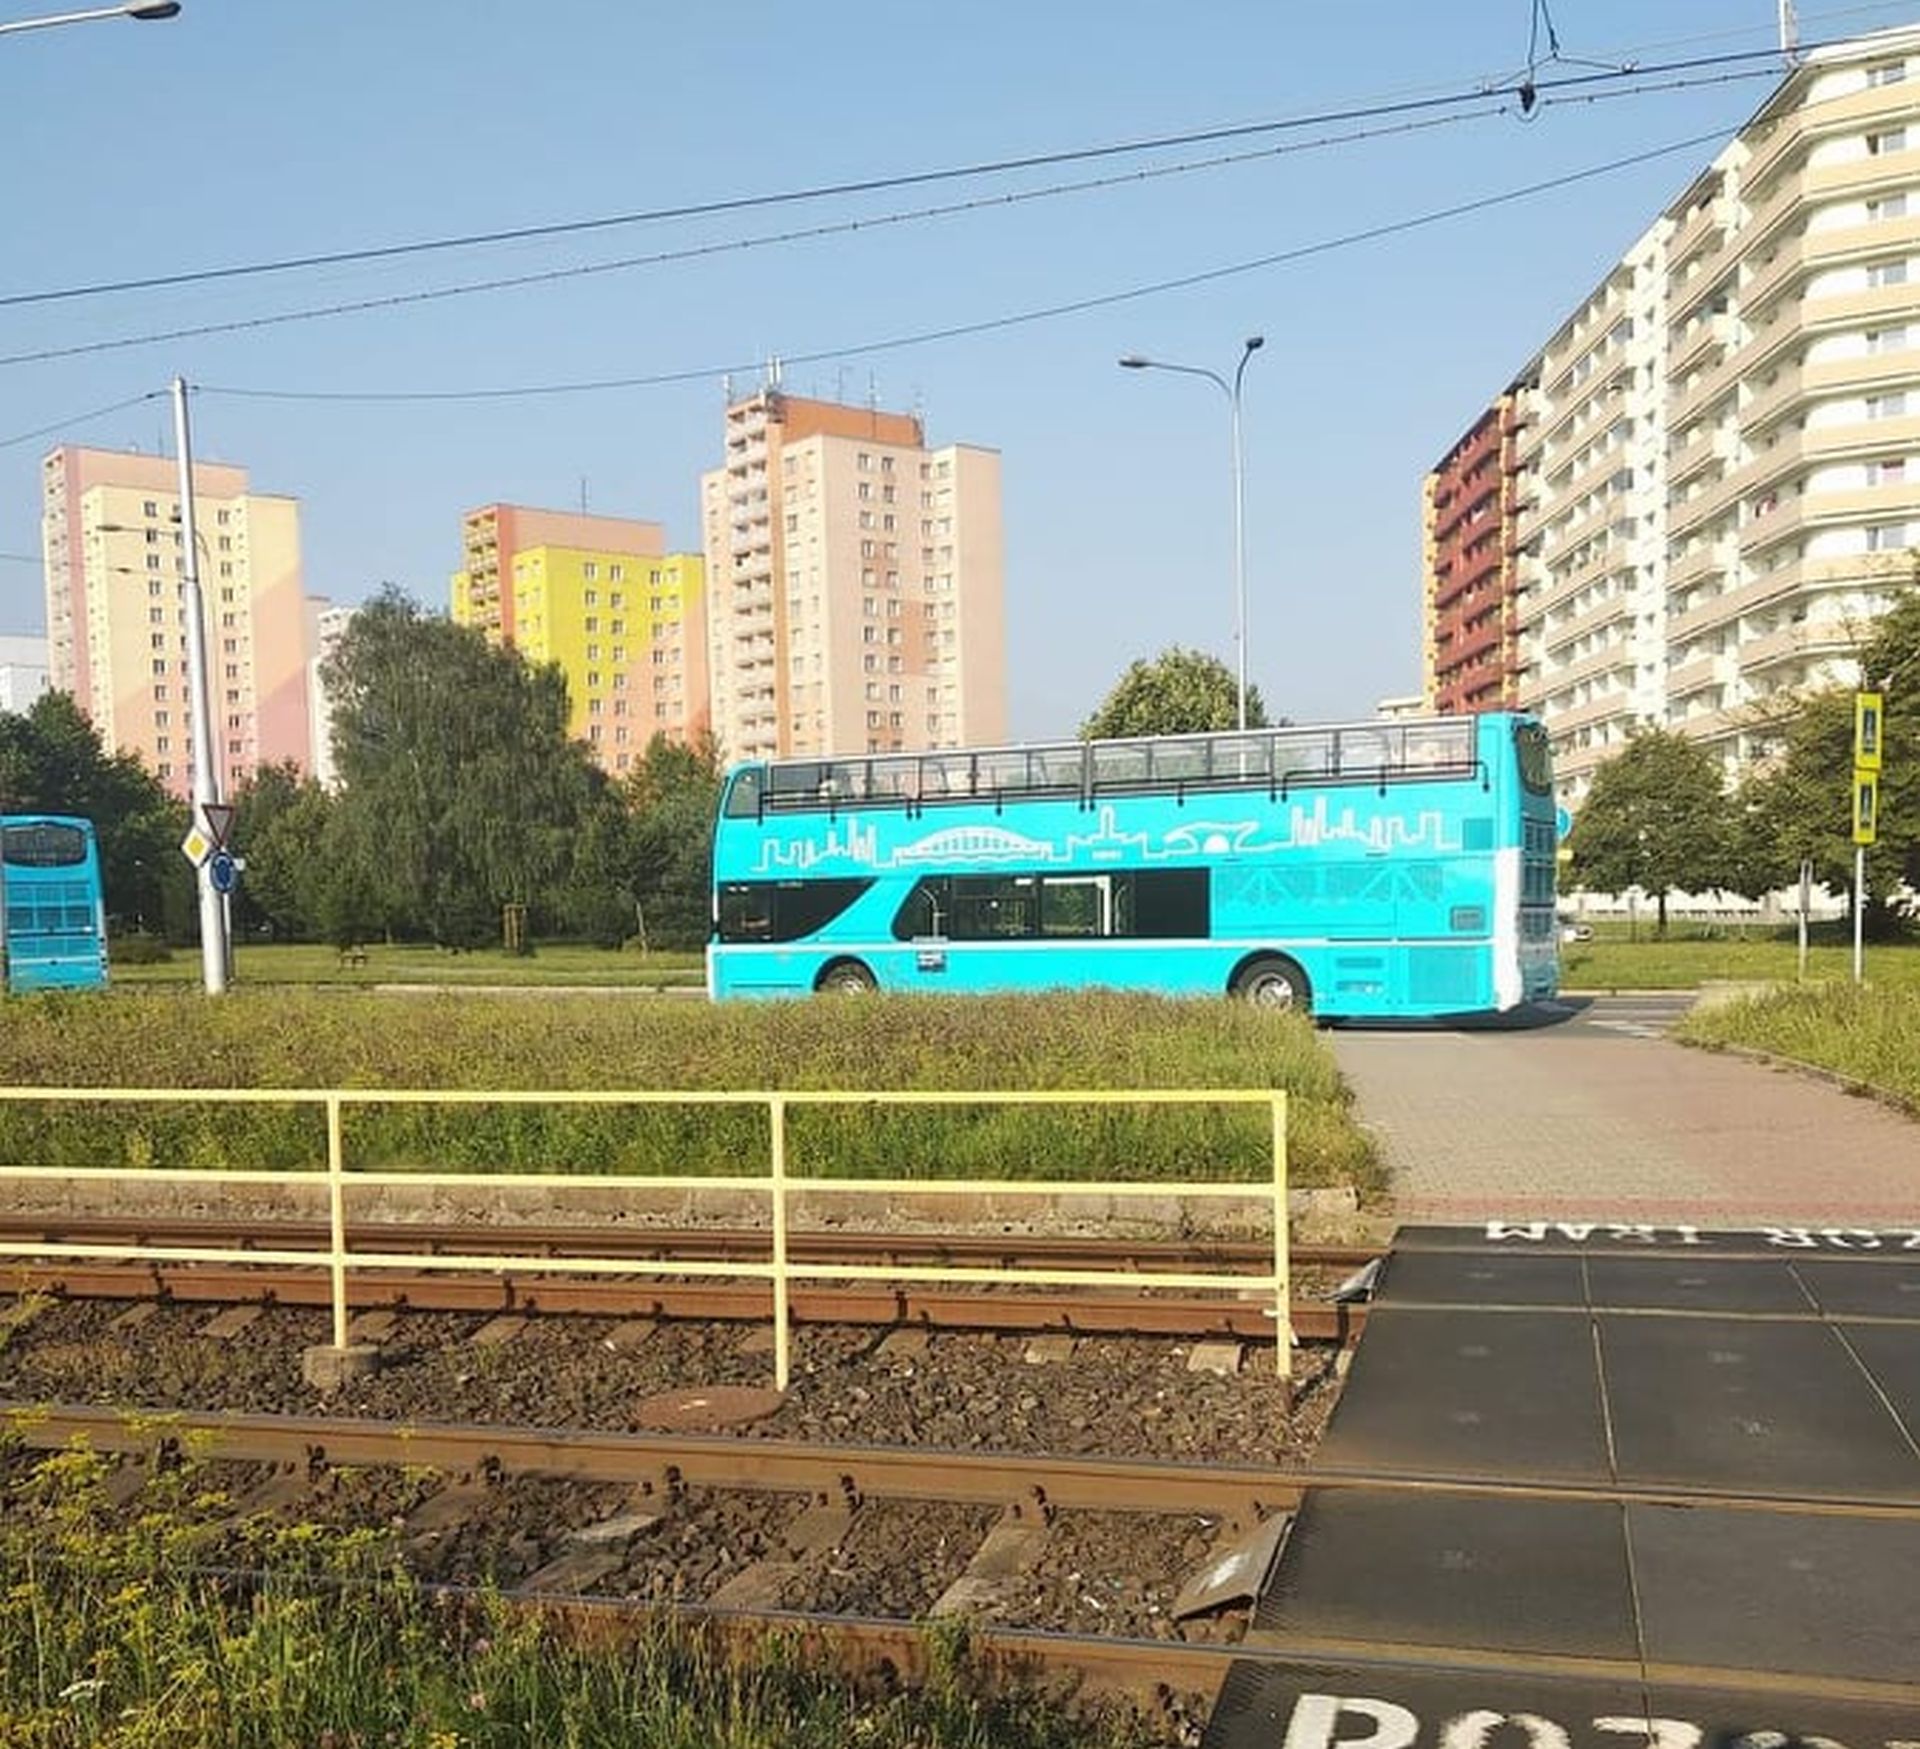 Nové dvoupodlažní autobusy v Ostravě. Foto: Monika Křeménková / FB skupina Ostrava